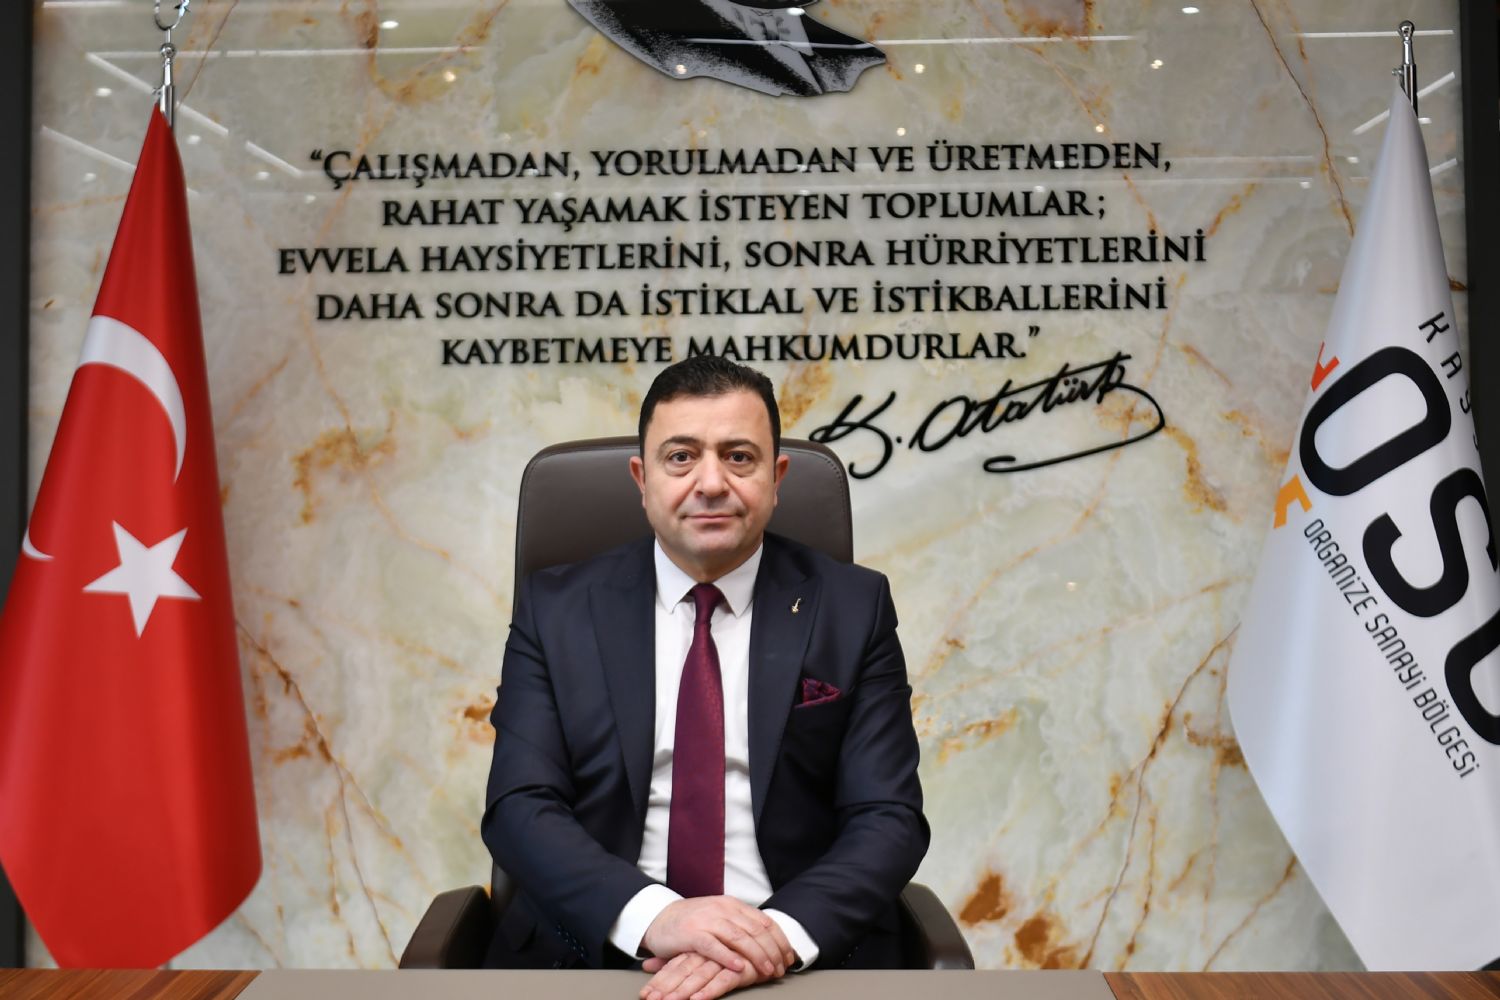 Kayseri OSB Başkanı Mehmet Yalçın'dan 10 Ocak Çalışan Gazeteciler Günü mesajı